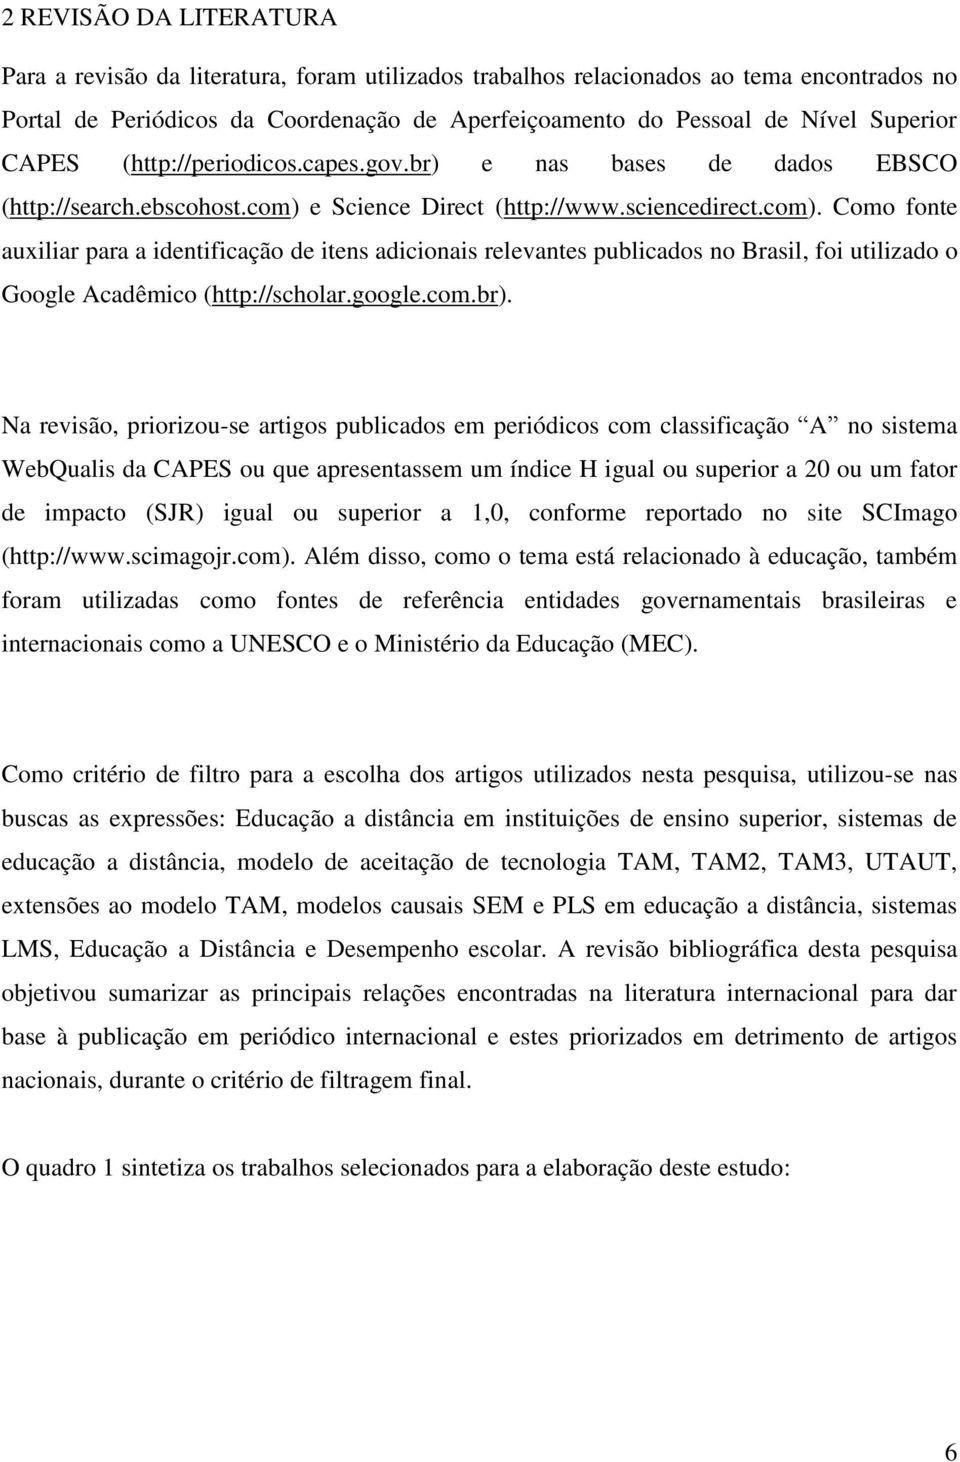 e Science Direct (http://www.sciencedirect.com). Como fonte auxiliar para a identificação de itens adicionais relevantes publicados no Brasil, foi utilizado o Google Acadêmico (http://scholar.google.